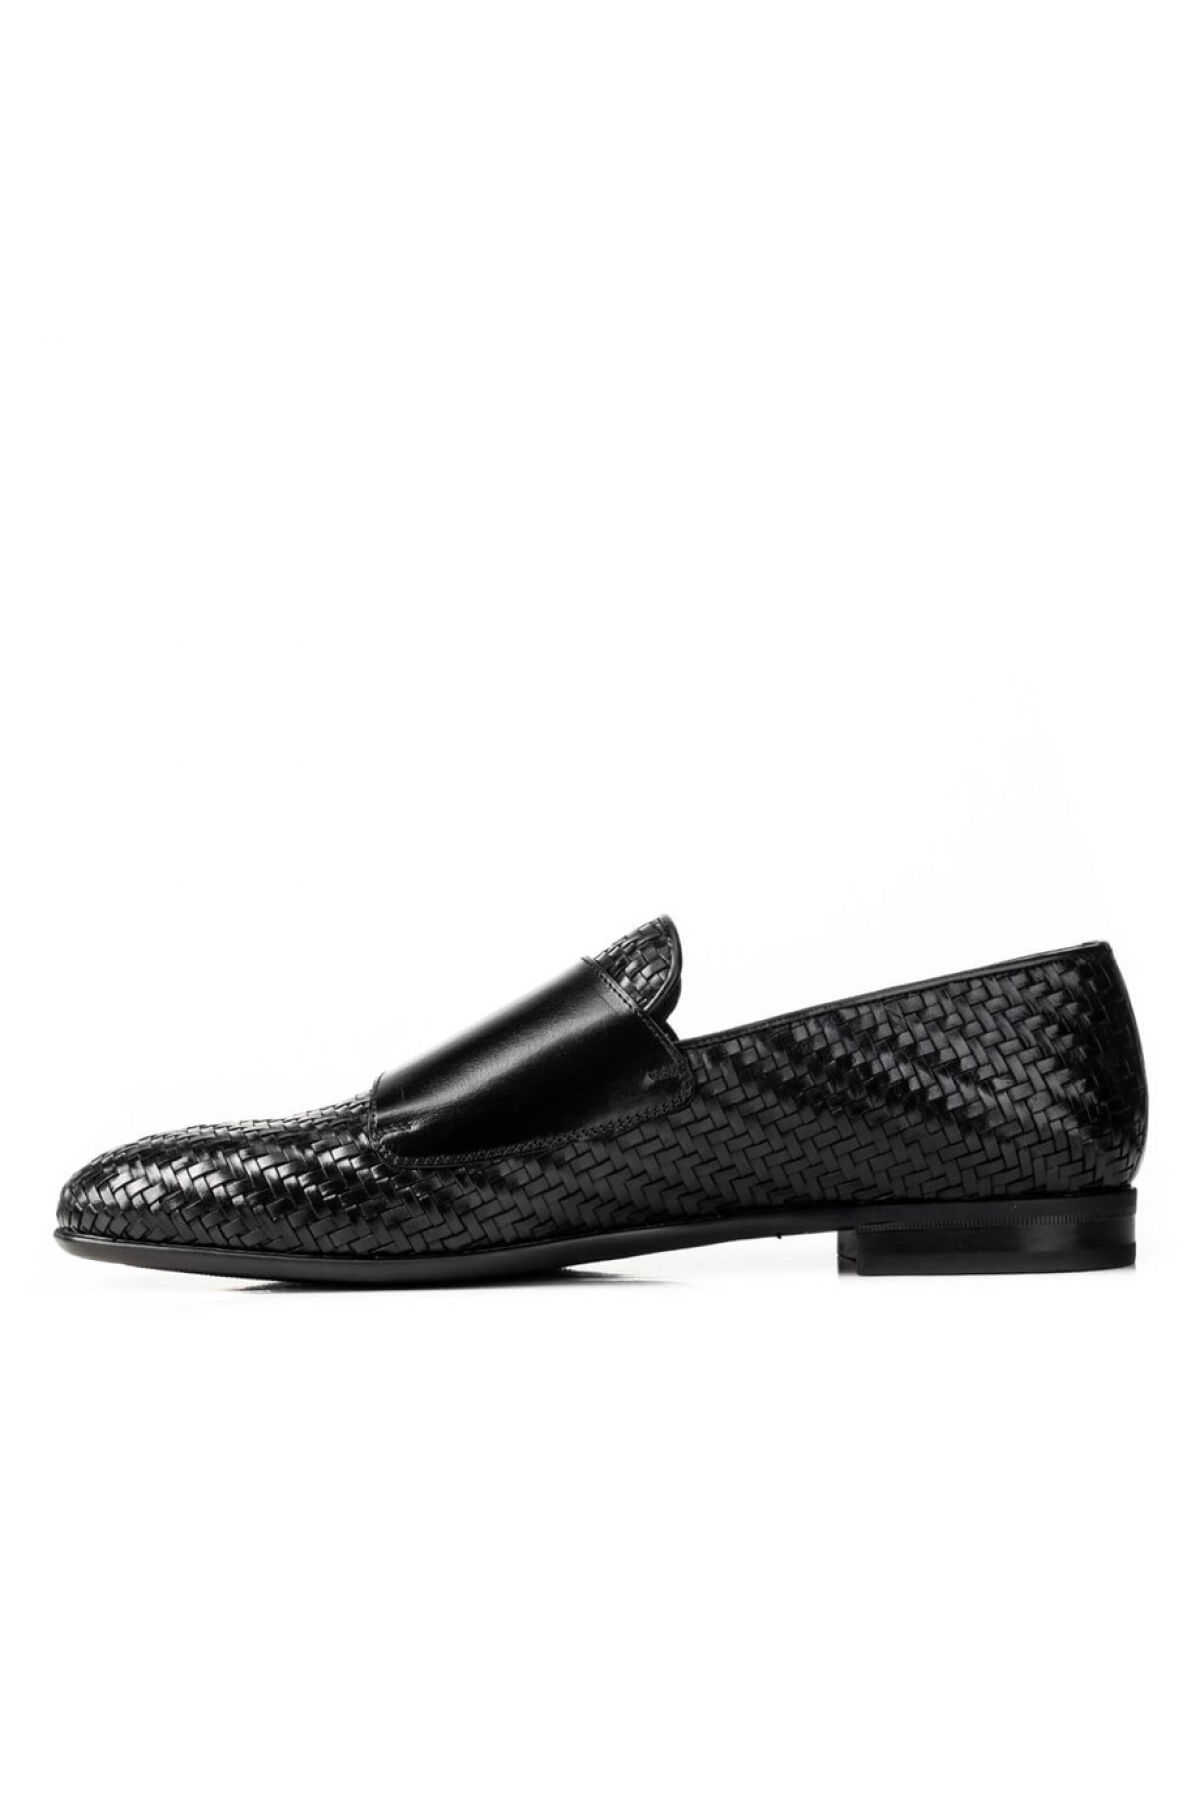 Flo Hakiki Deri Siyah Erkek Klasik Ayakkabı. 3